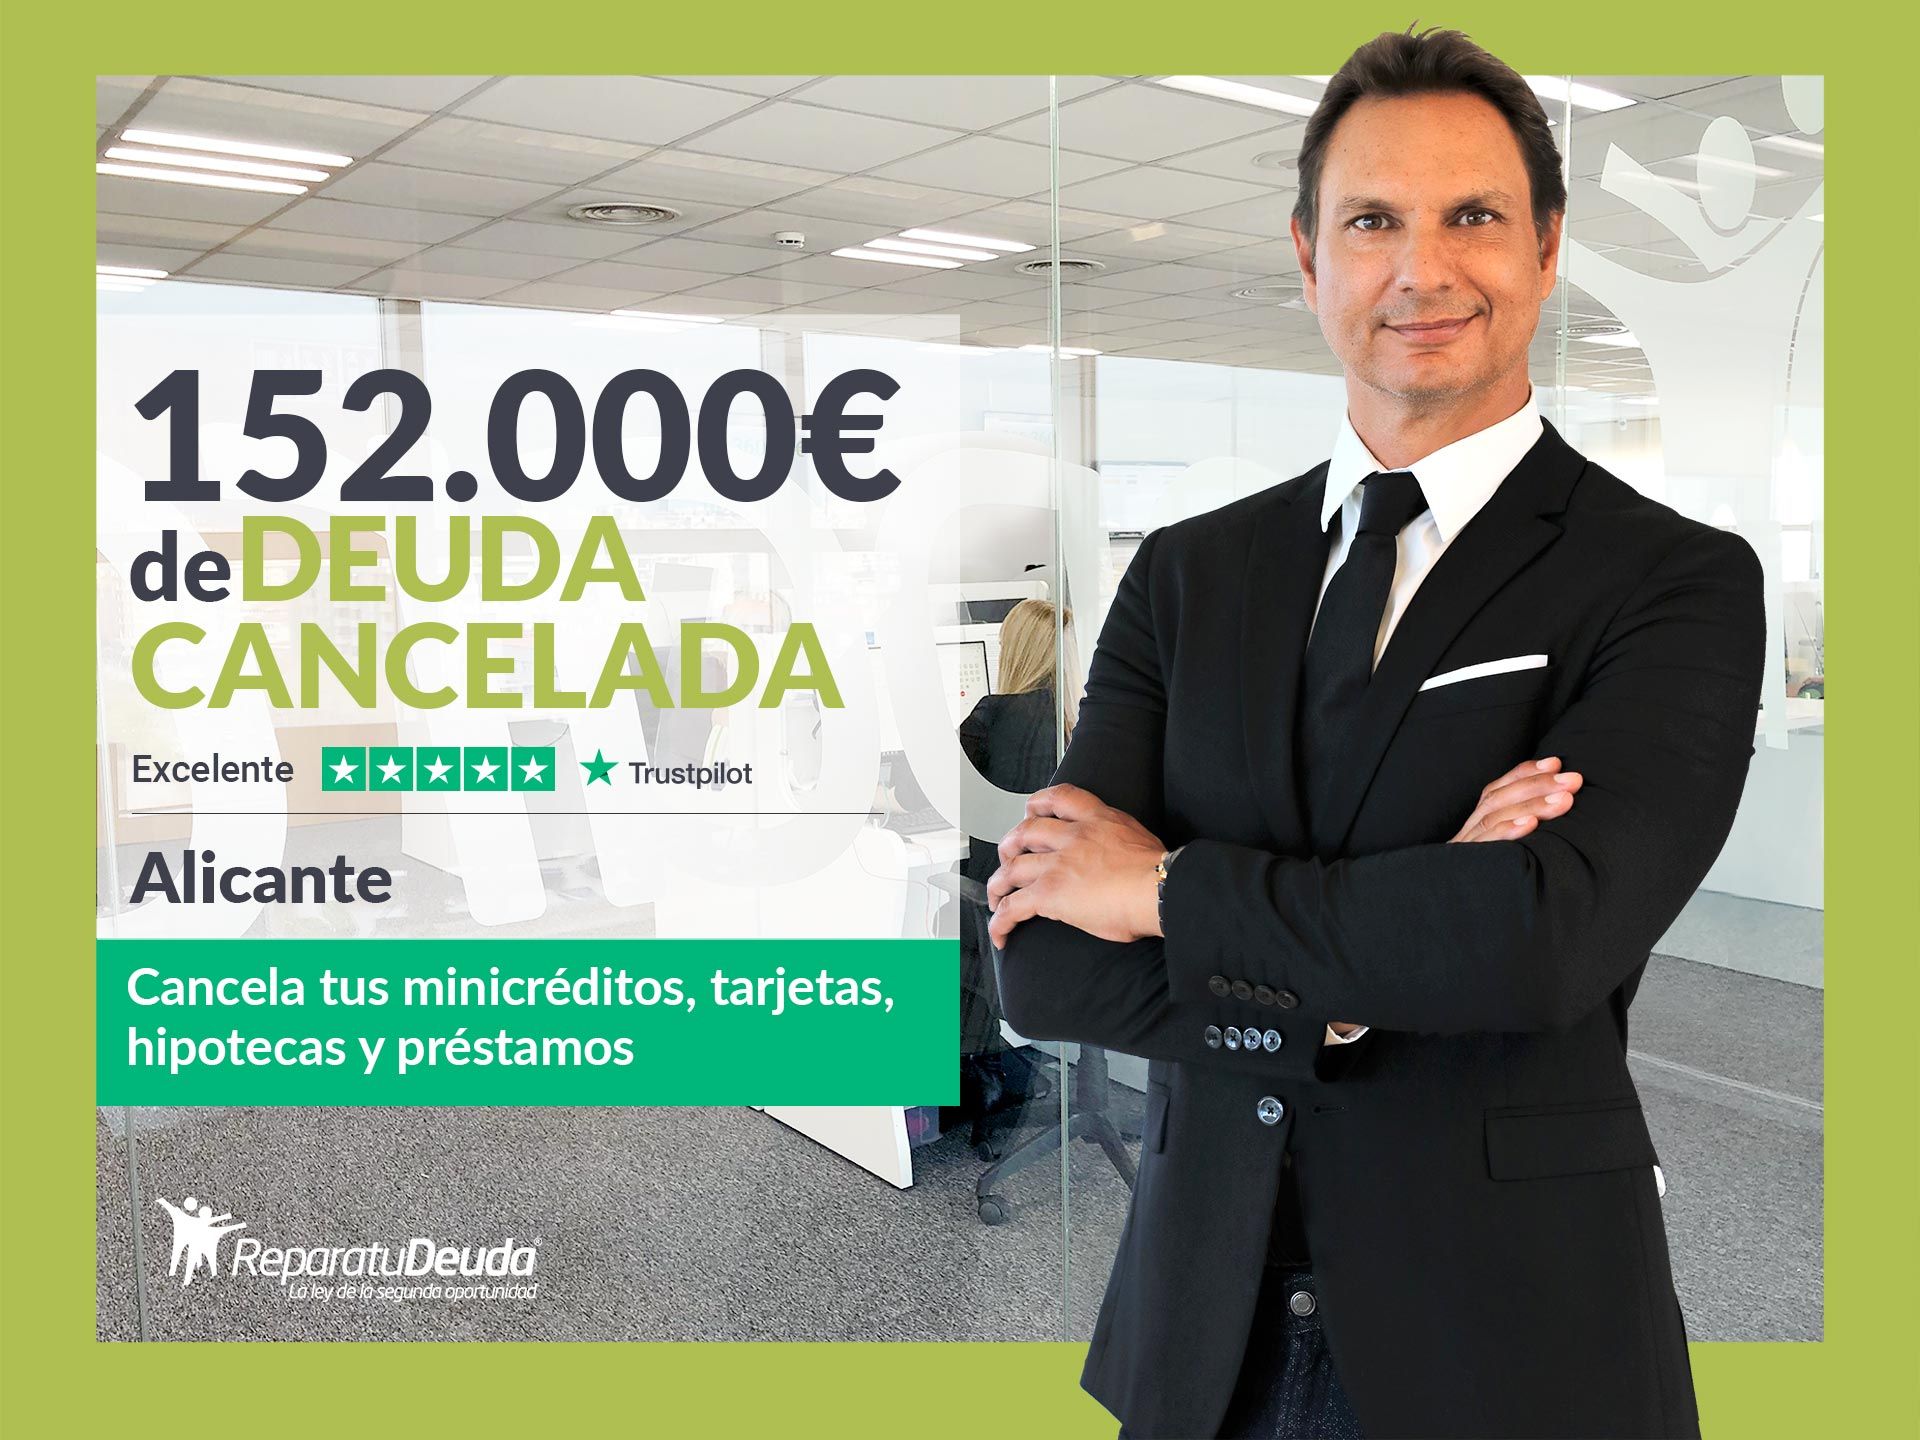 Repara tu Deuda cancela 152.000 euros en Alicante (Comunidad Valenciana) con la Ley de Segunda Oportunidad